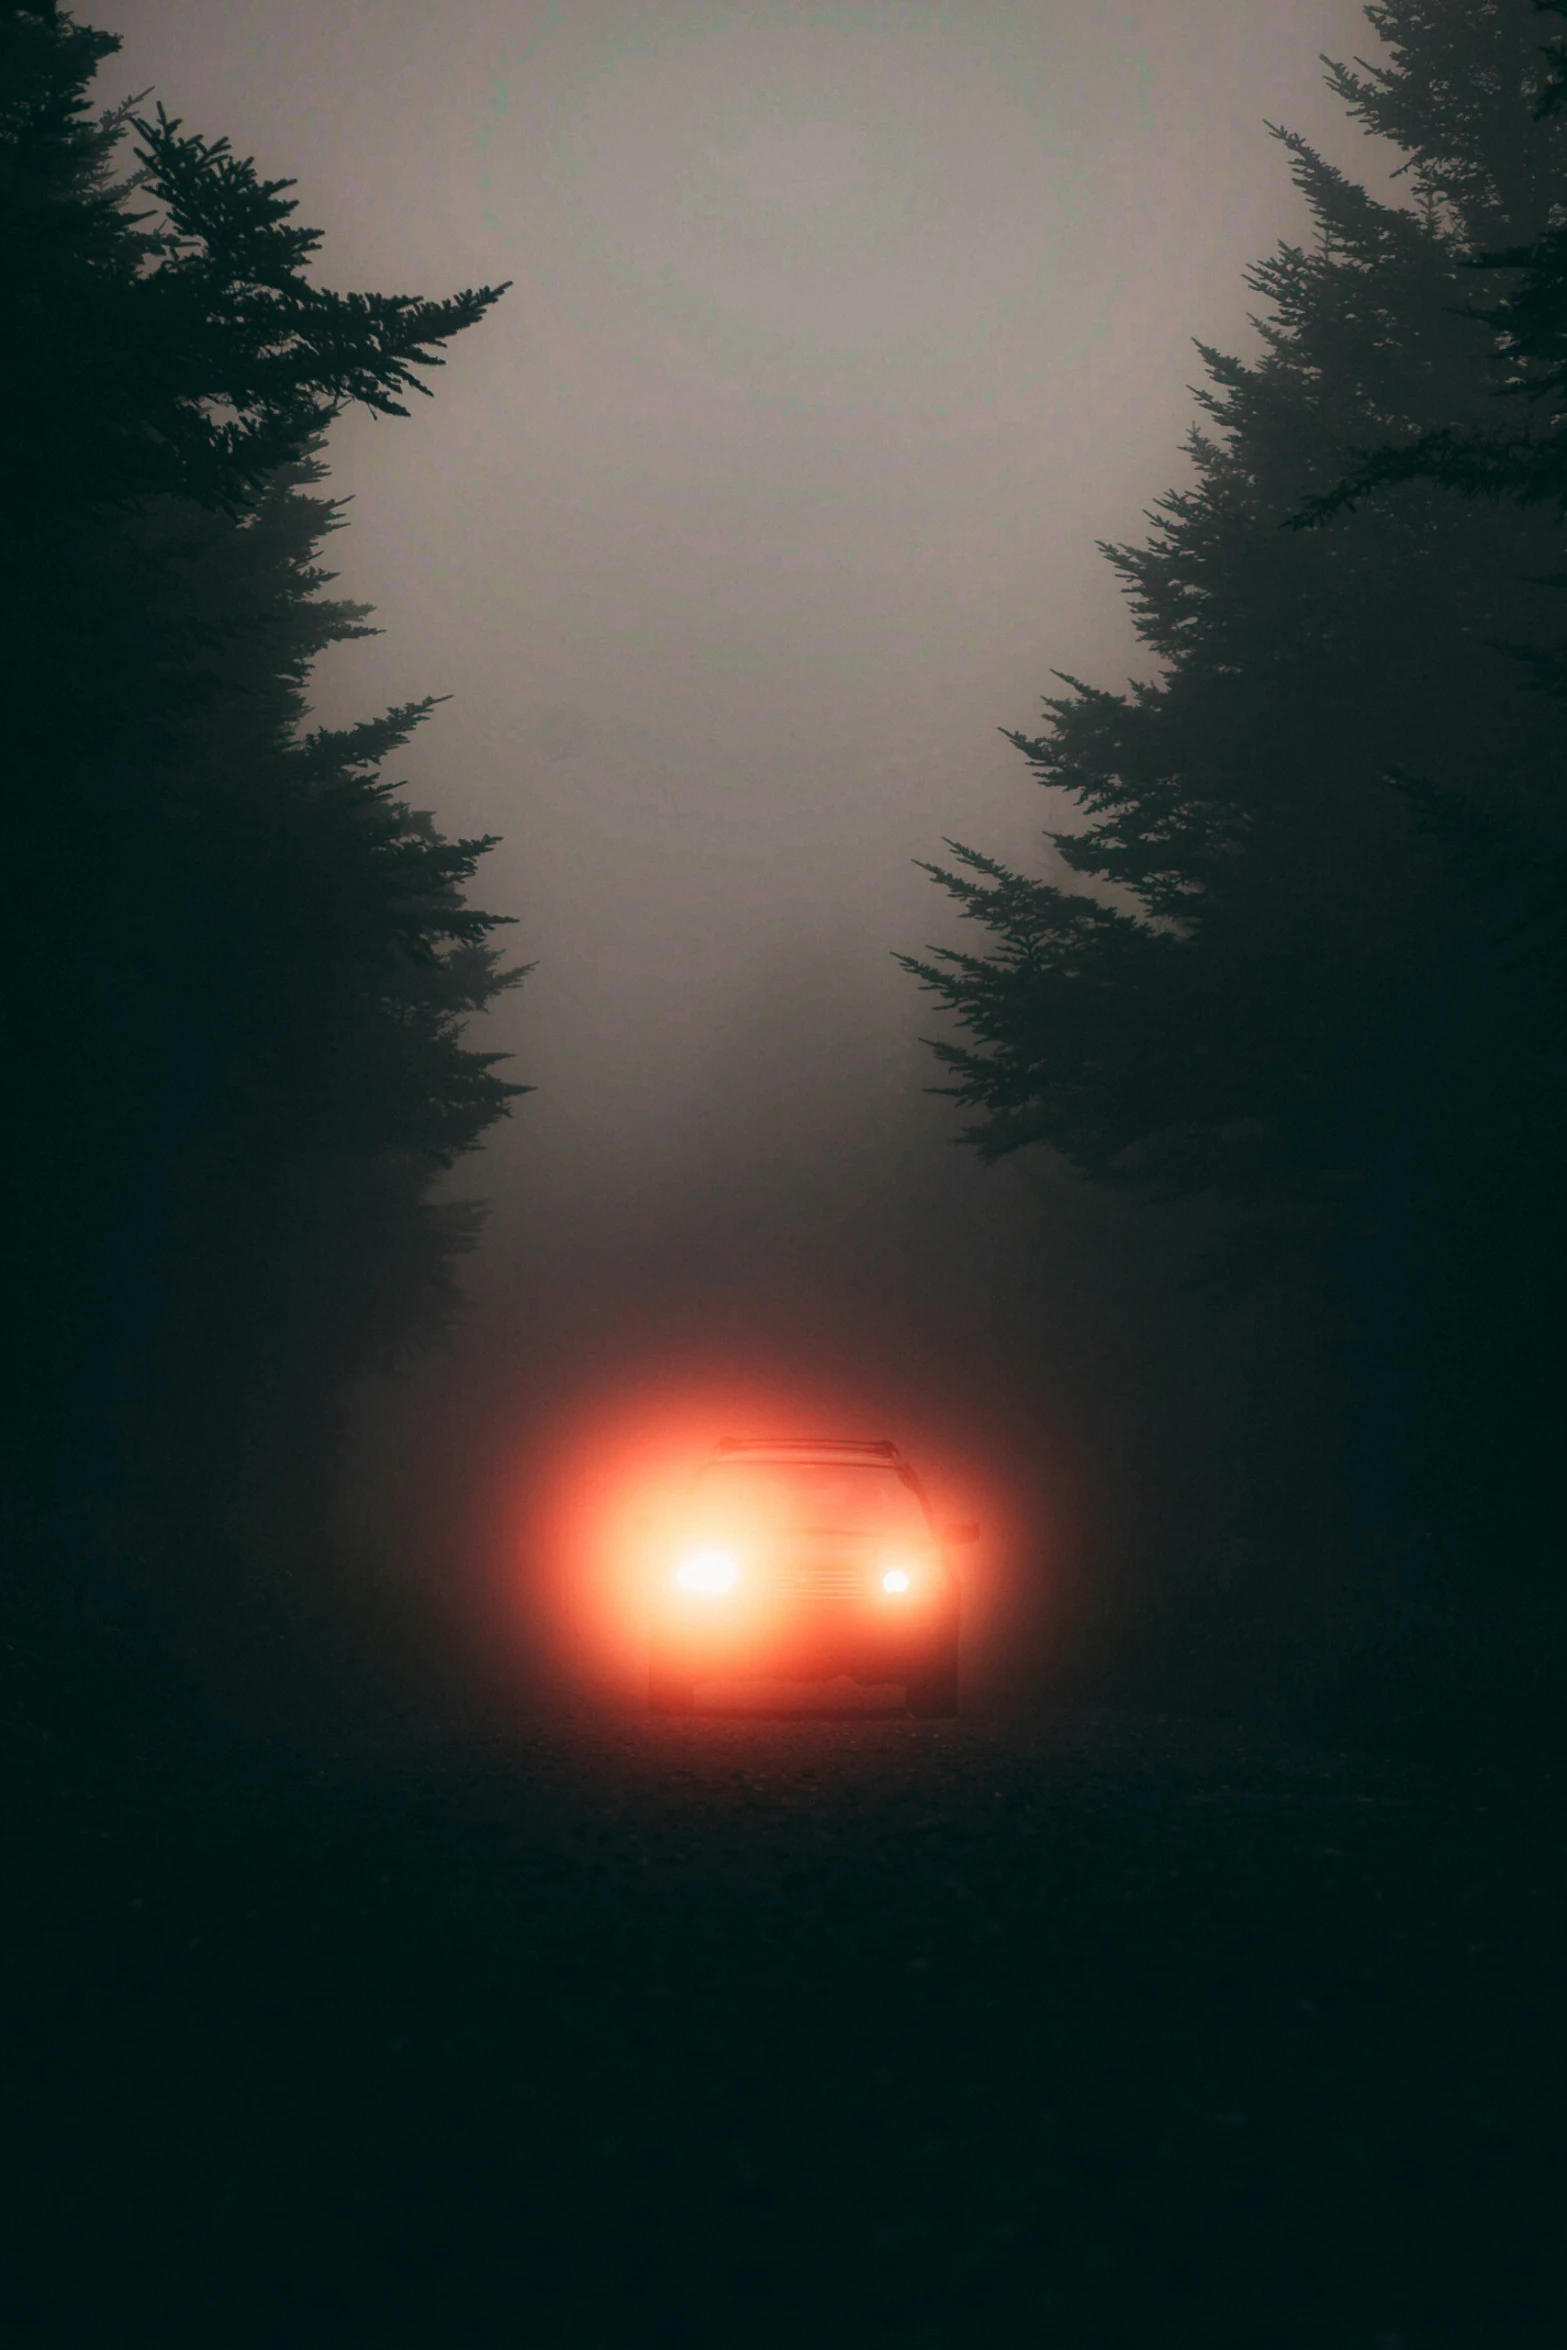 car driving through dark fog on forest road